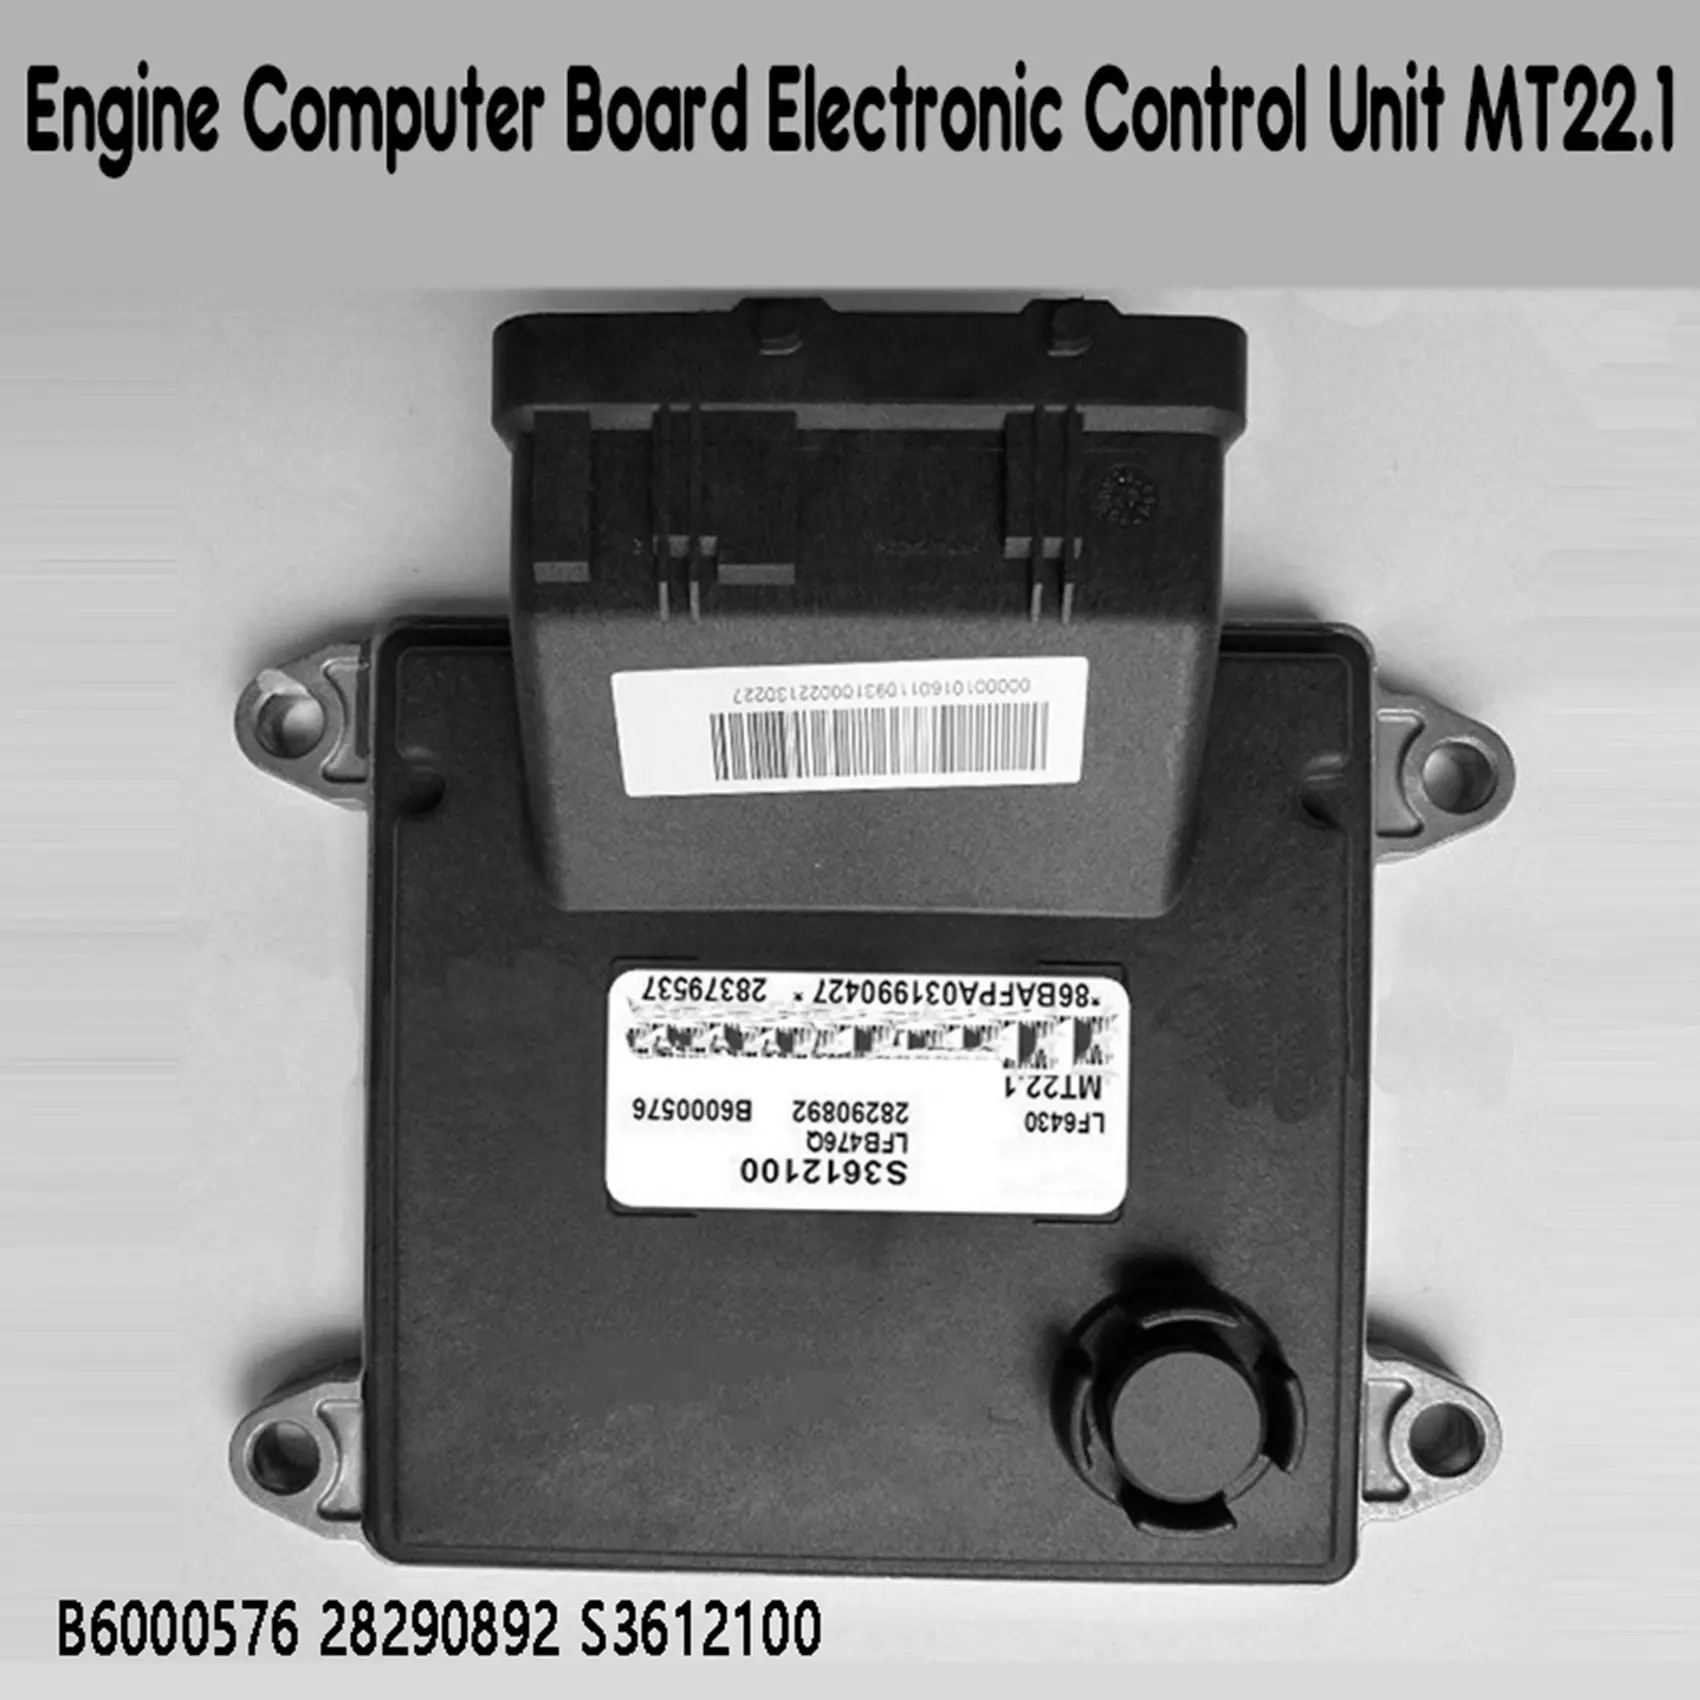 ECU do Motor do Carro Conselho de Computador Unidade de Controle Eletrônico MT22.1 B6000576 28290892 S3612100 para LiFan1